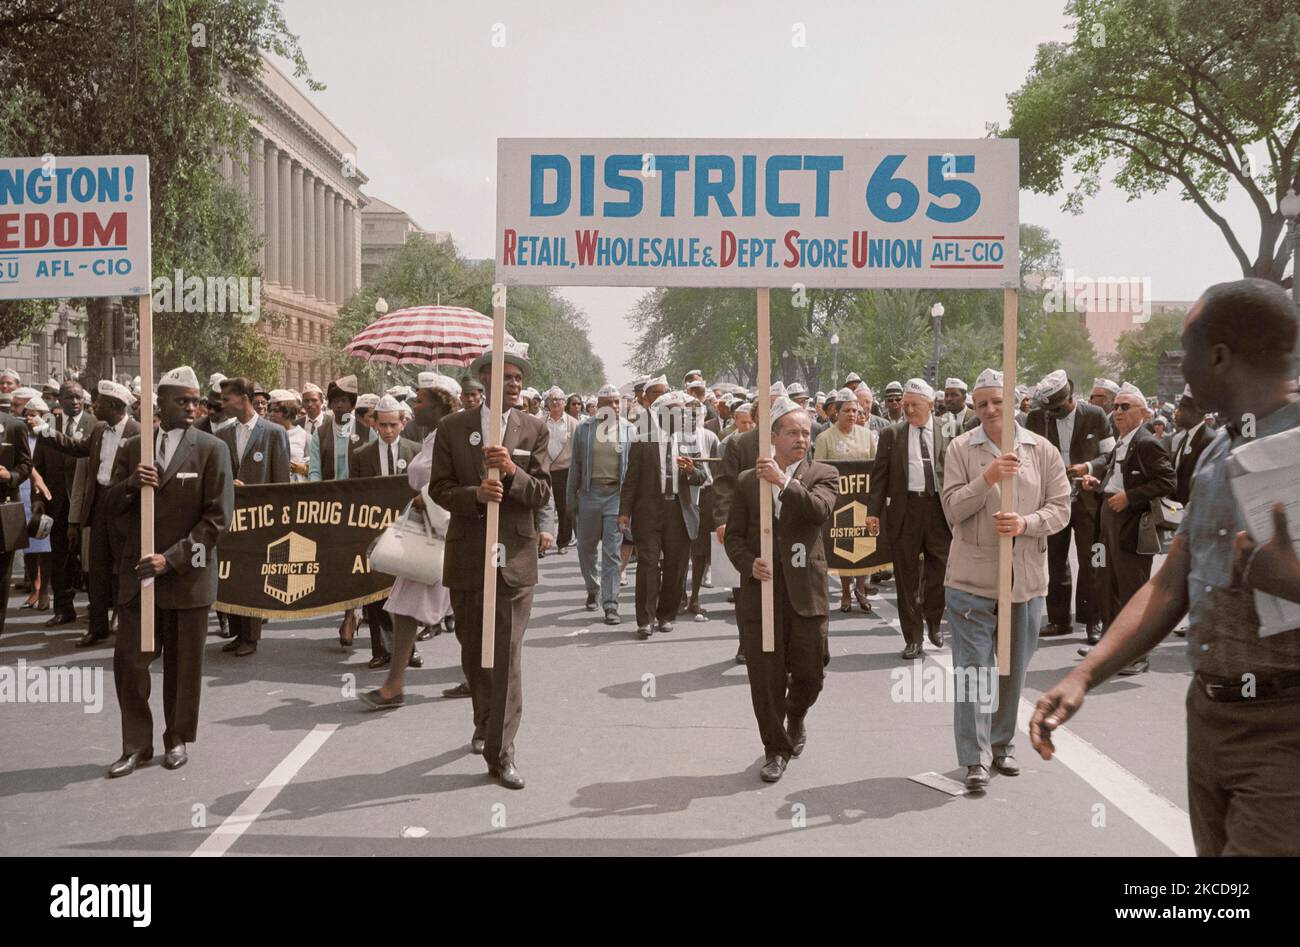 Agosto 28, 1963 - dimostranti che trasportano un segno a marzo su Washington. Foto Stock